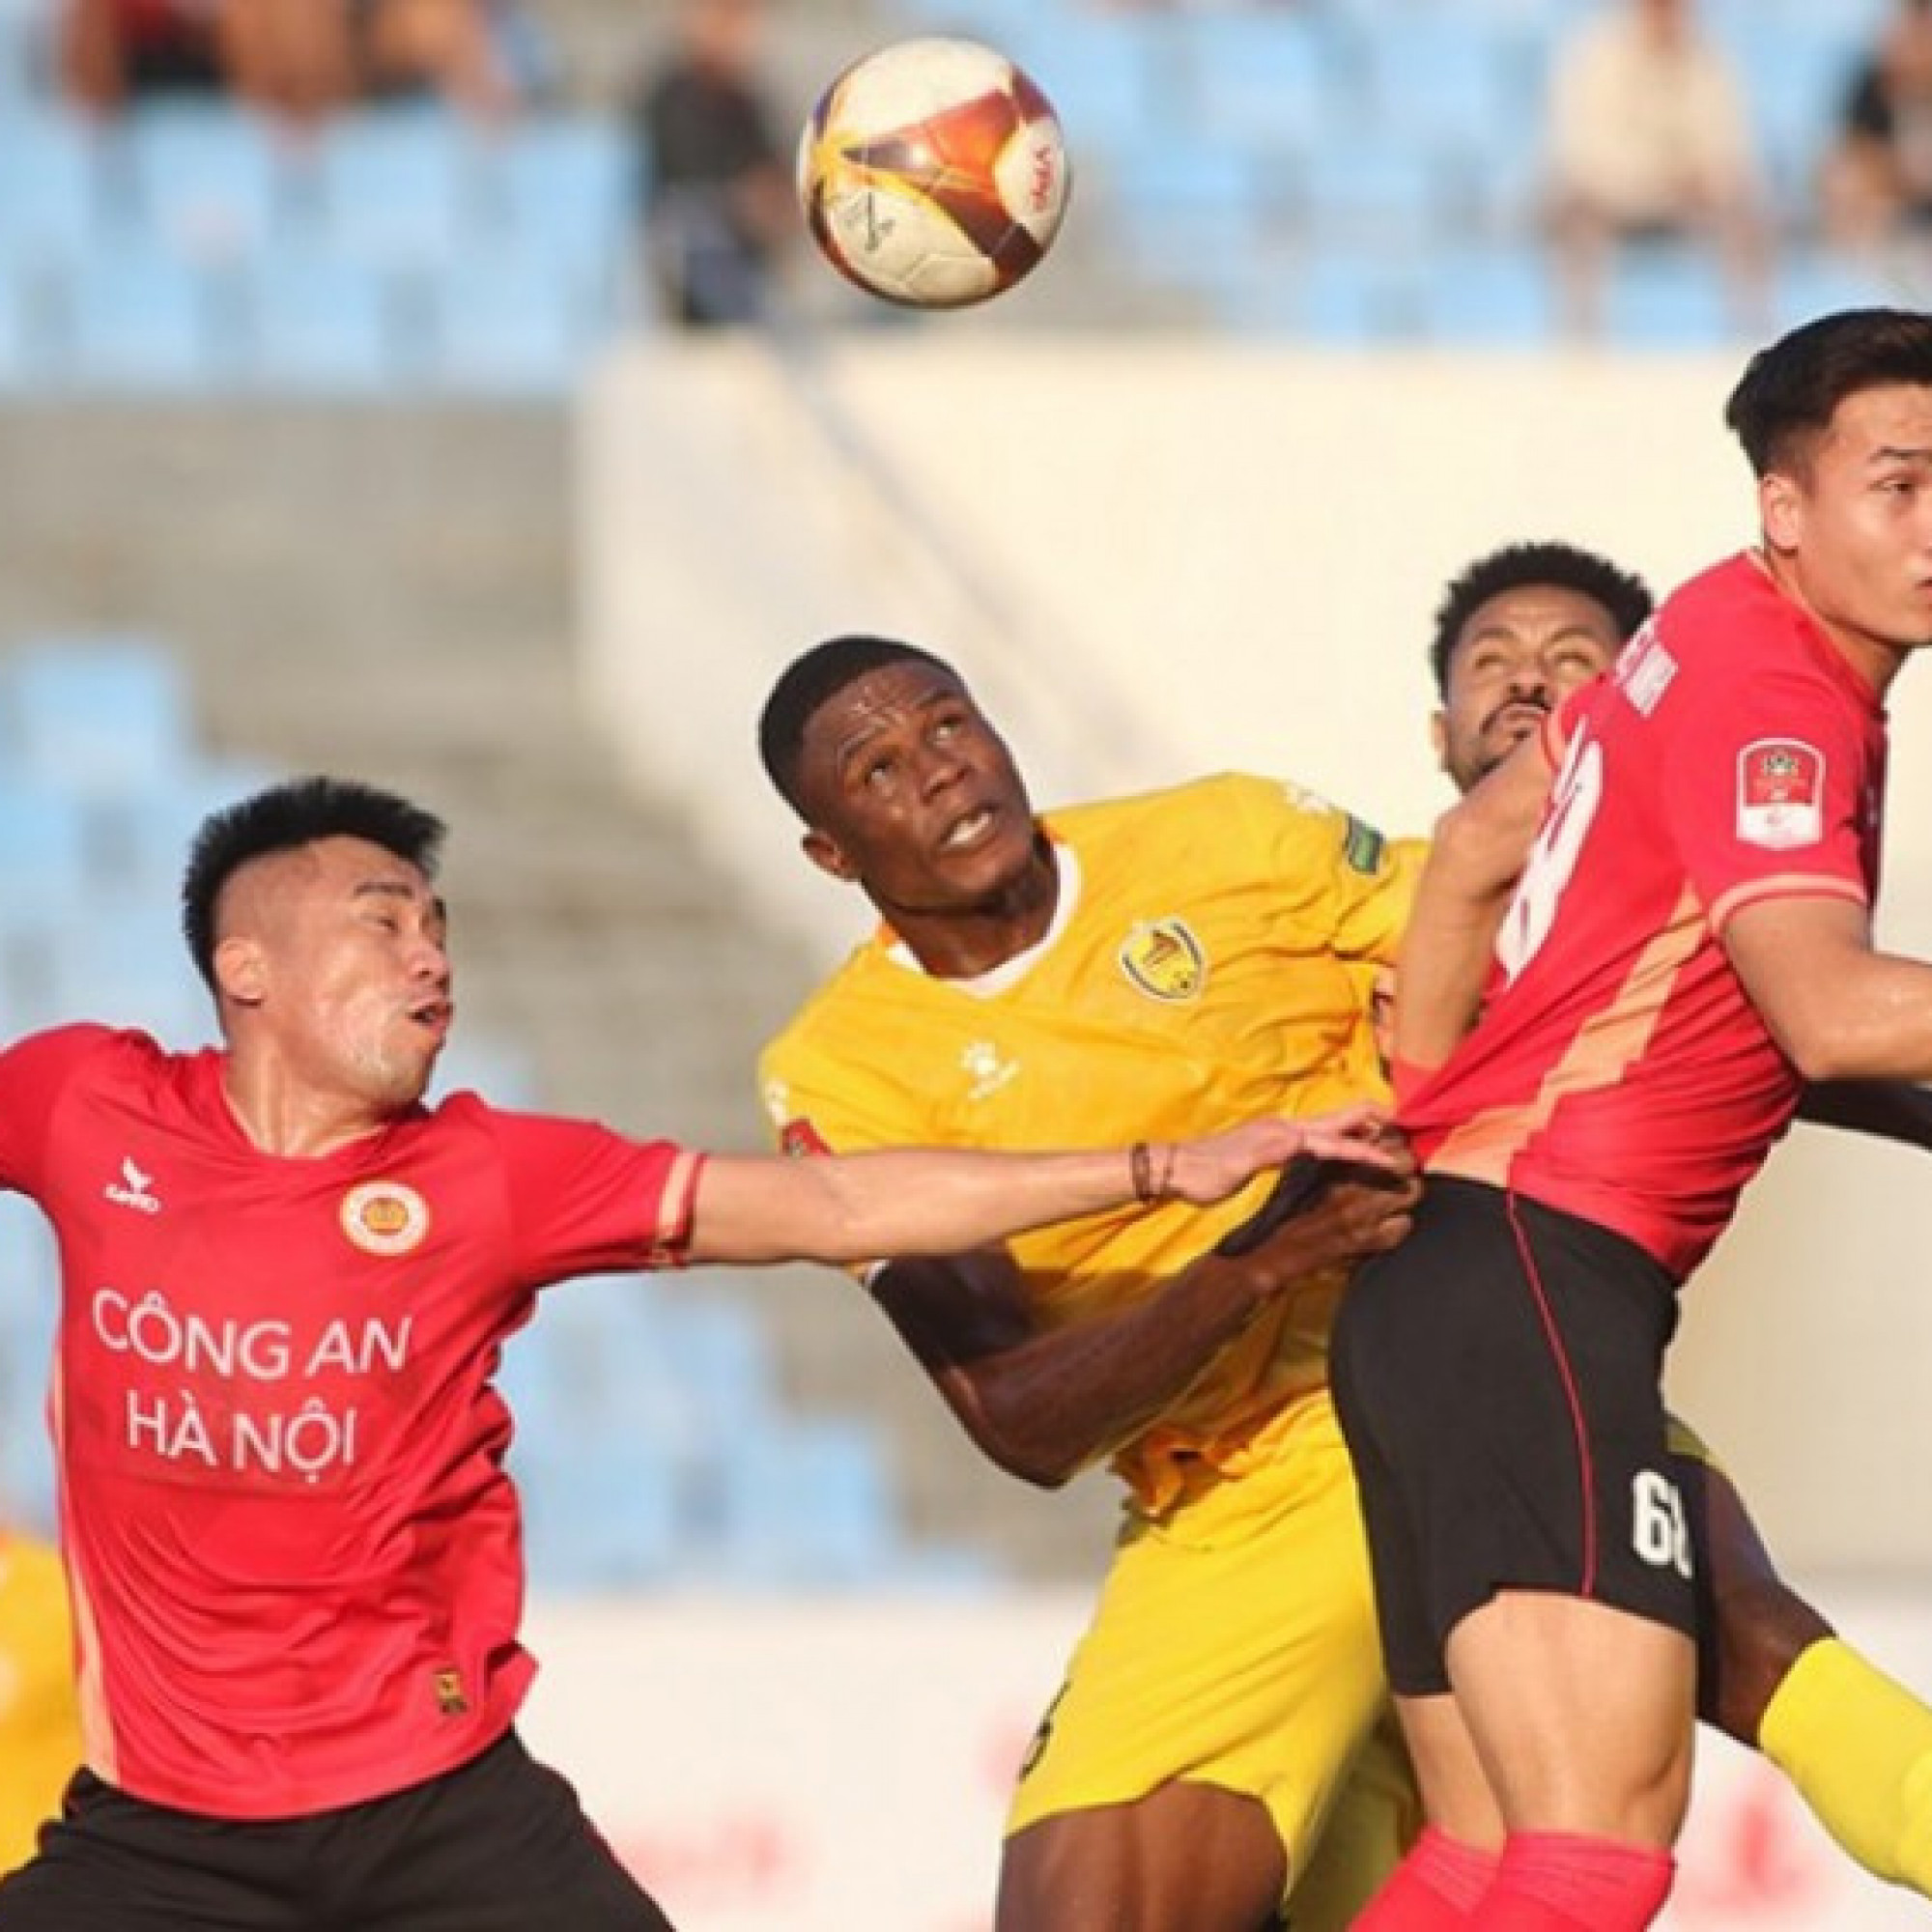  - Video bóng đá Quảng Nam - Công an Hà Nội: Thẻ đỏ tai hại, sụp đổ cuối trận (V-League)